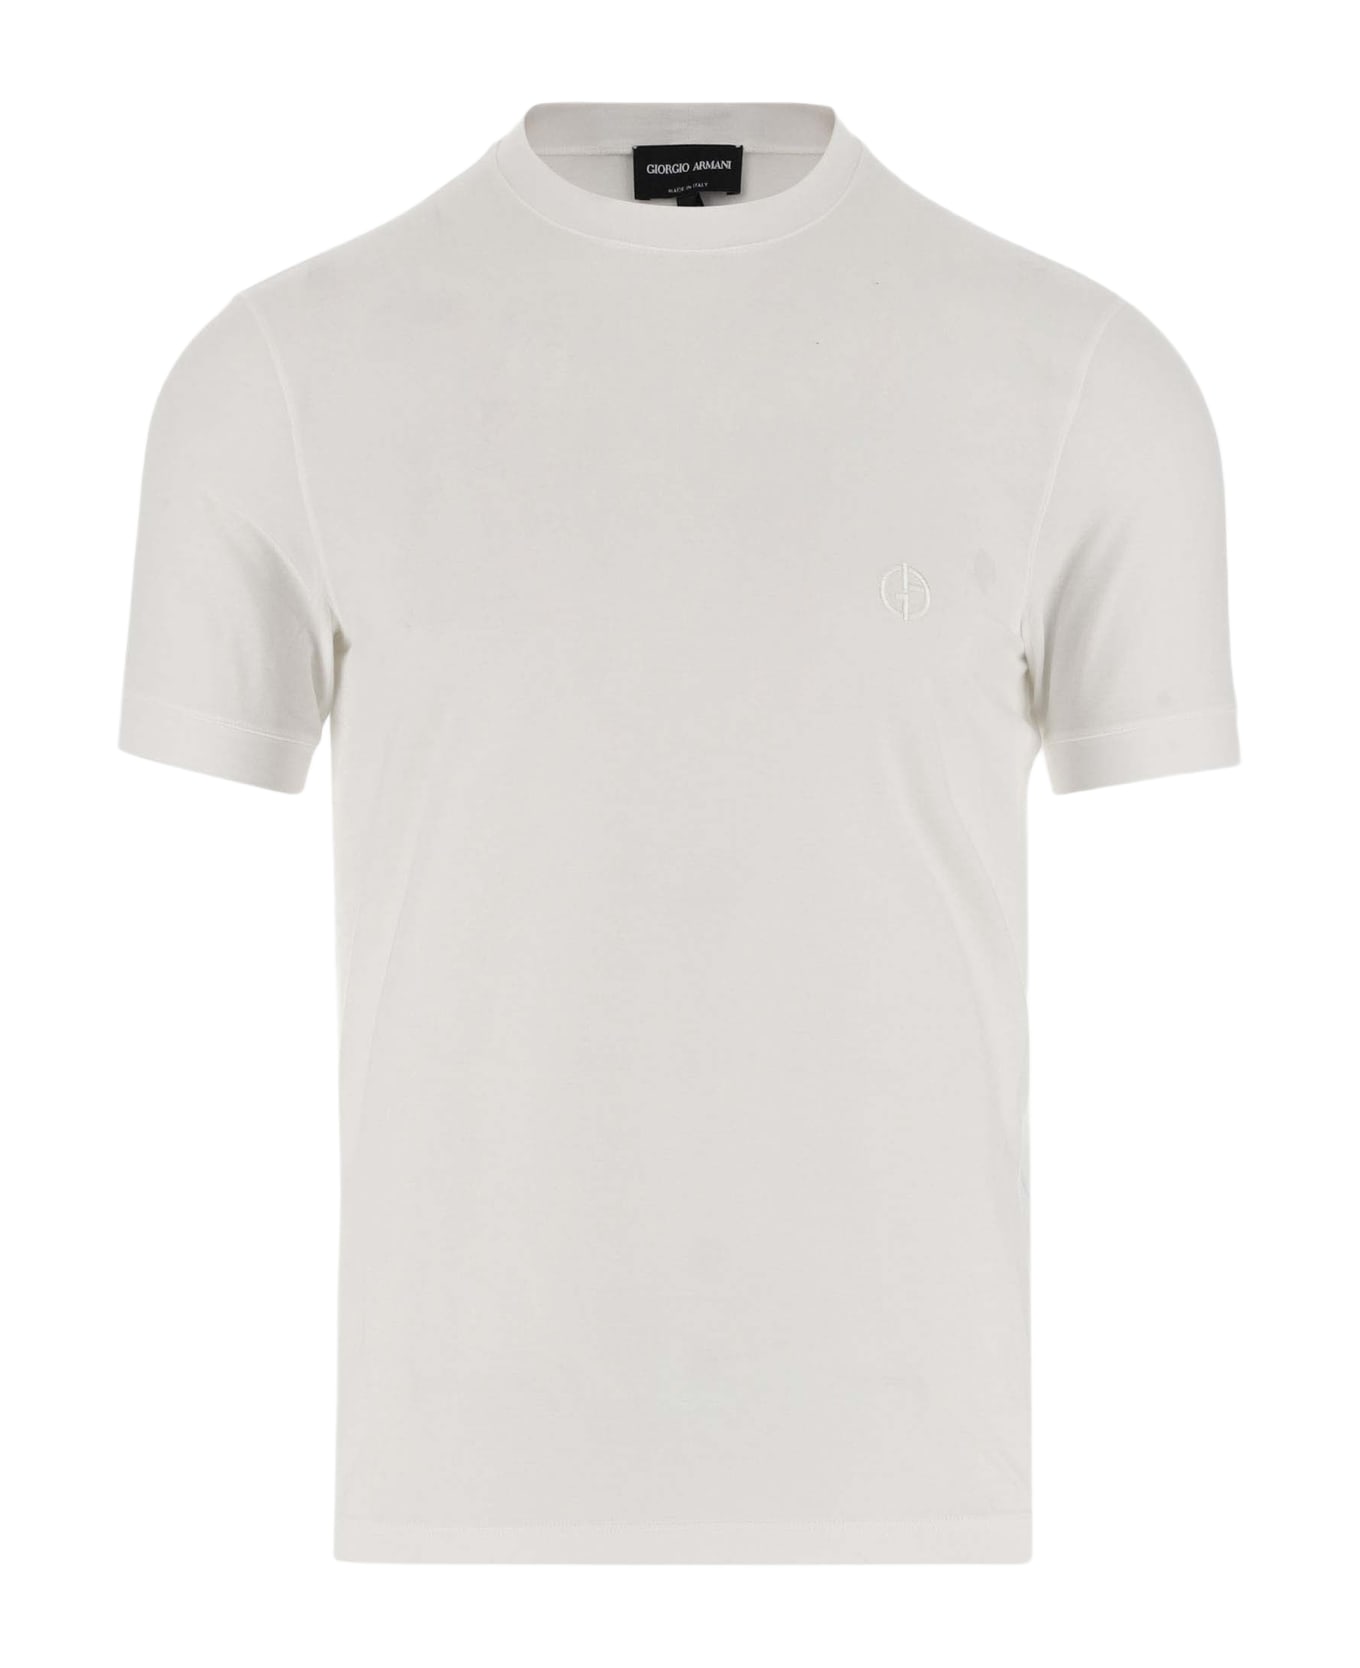 Giorgio Armani Stretch Viscose T-shirt With Logo - White